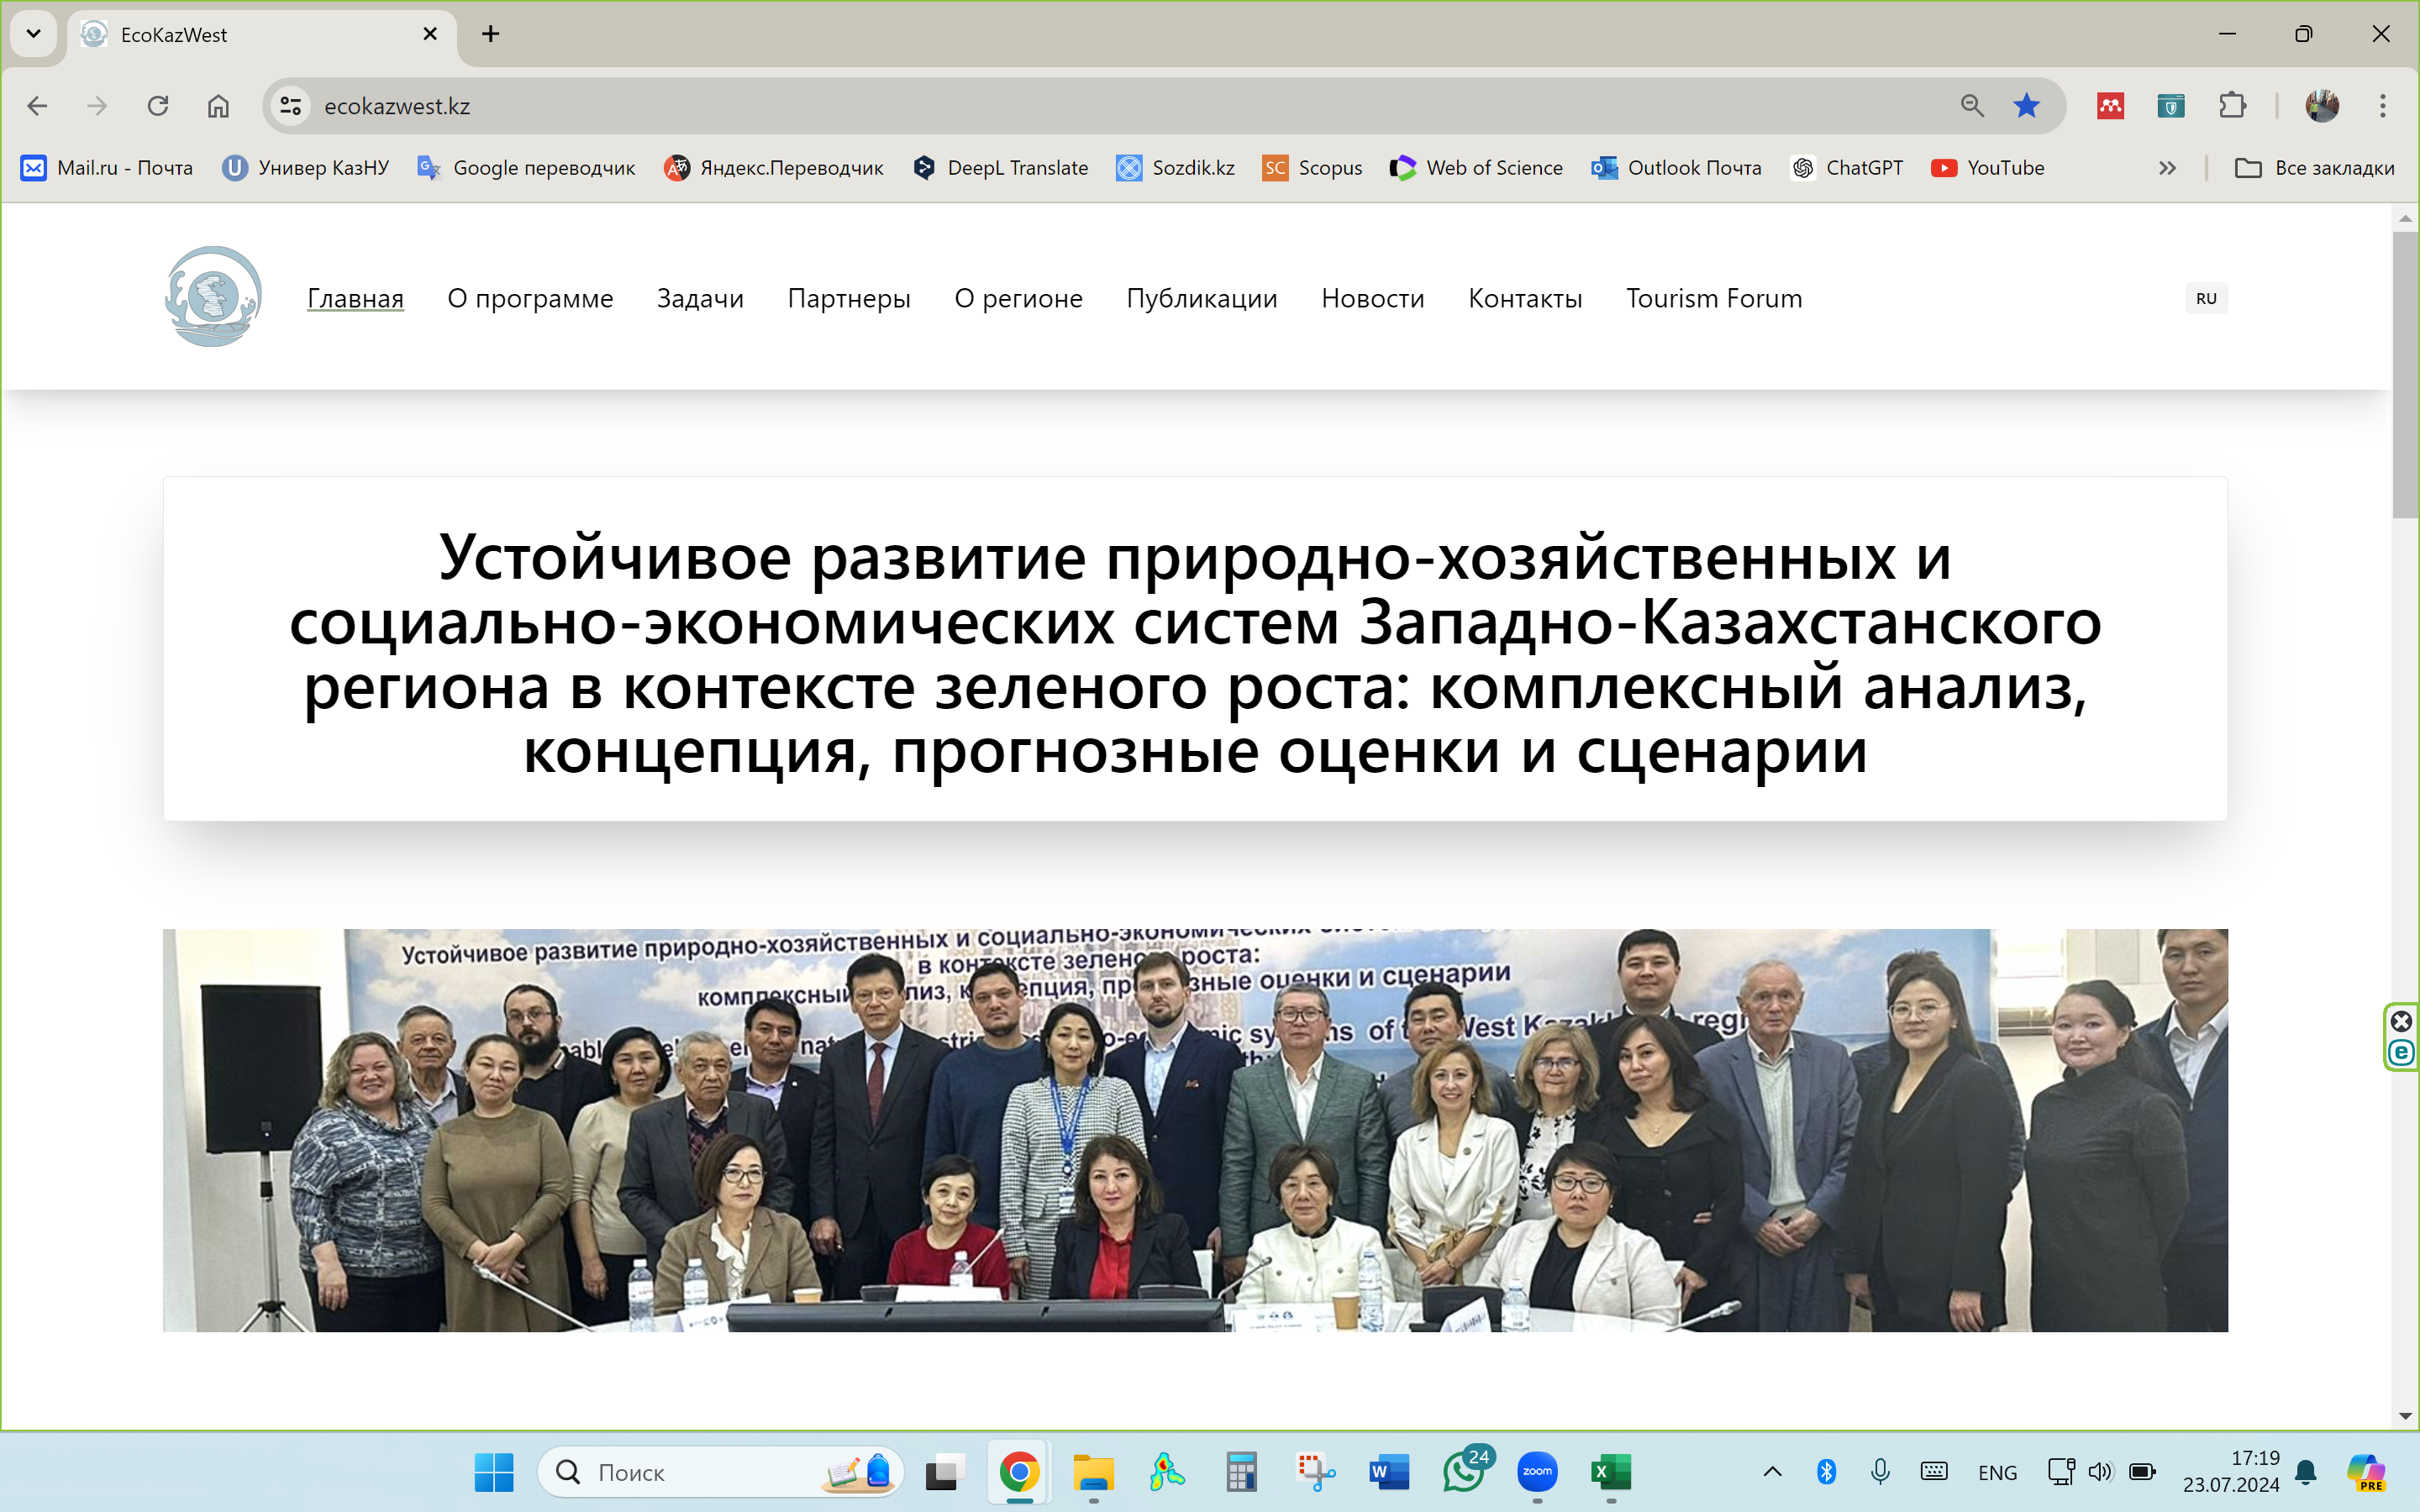 Ученые КазНУ запустили веб-сайт научной программы по устойчивому развитию Западно-Казахстанского региона